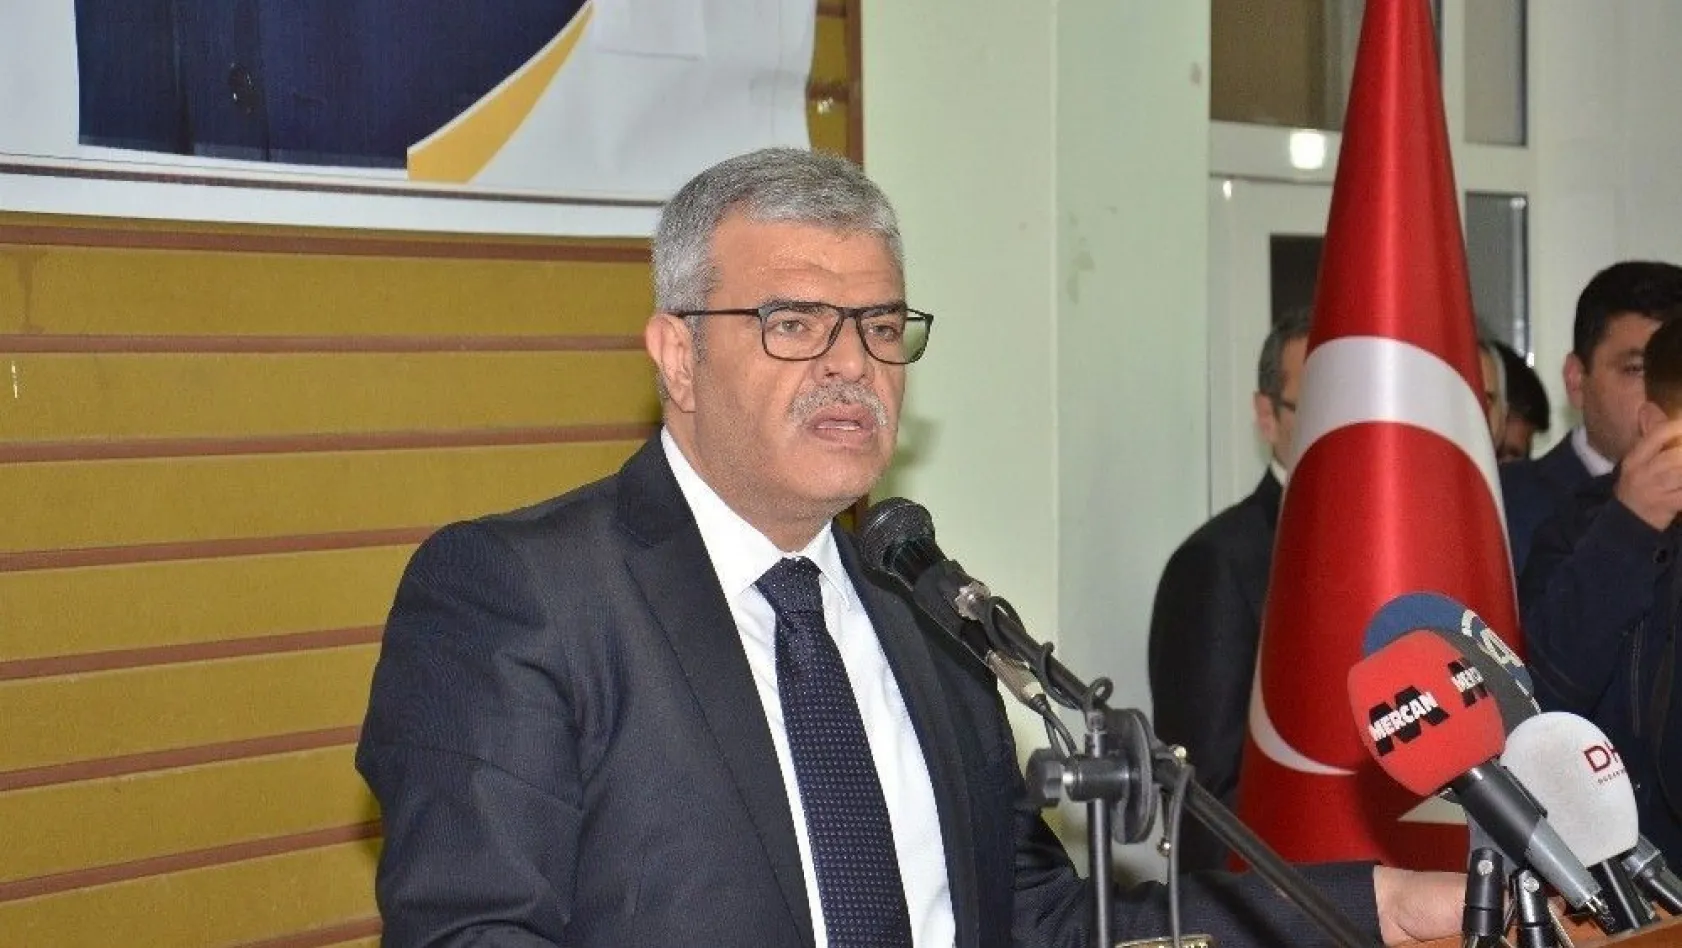 Başbakan Yardımcısı Kaynak, Kılıçdaroğlu'na yüklendi
